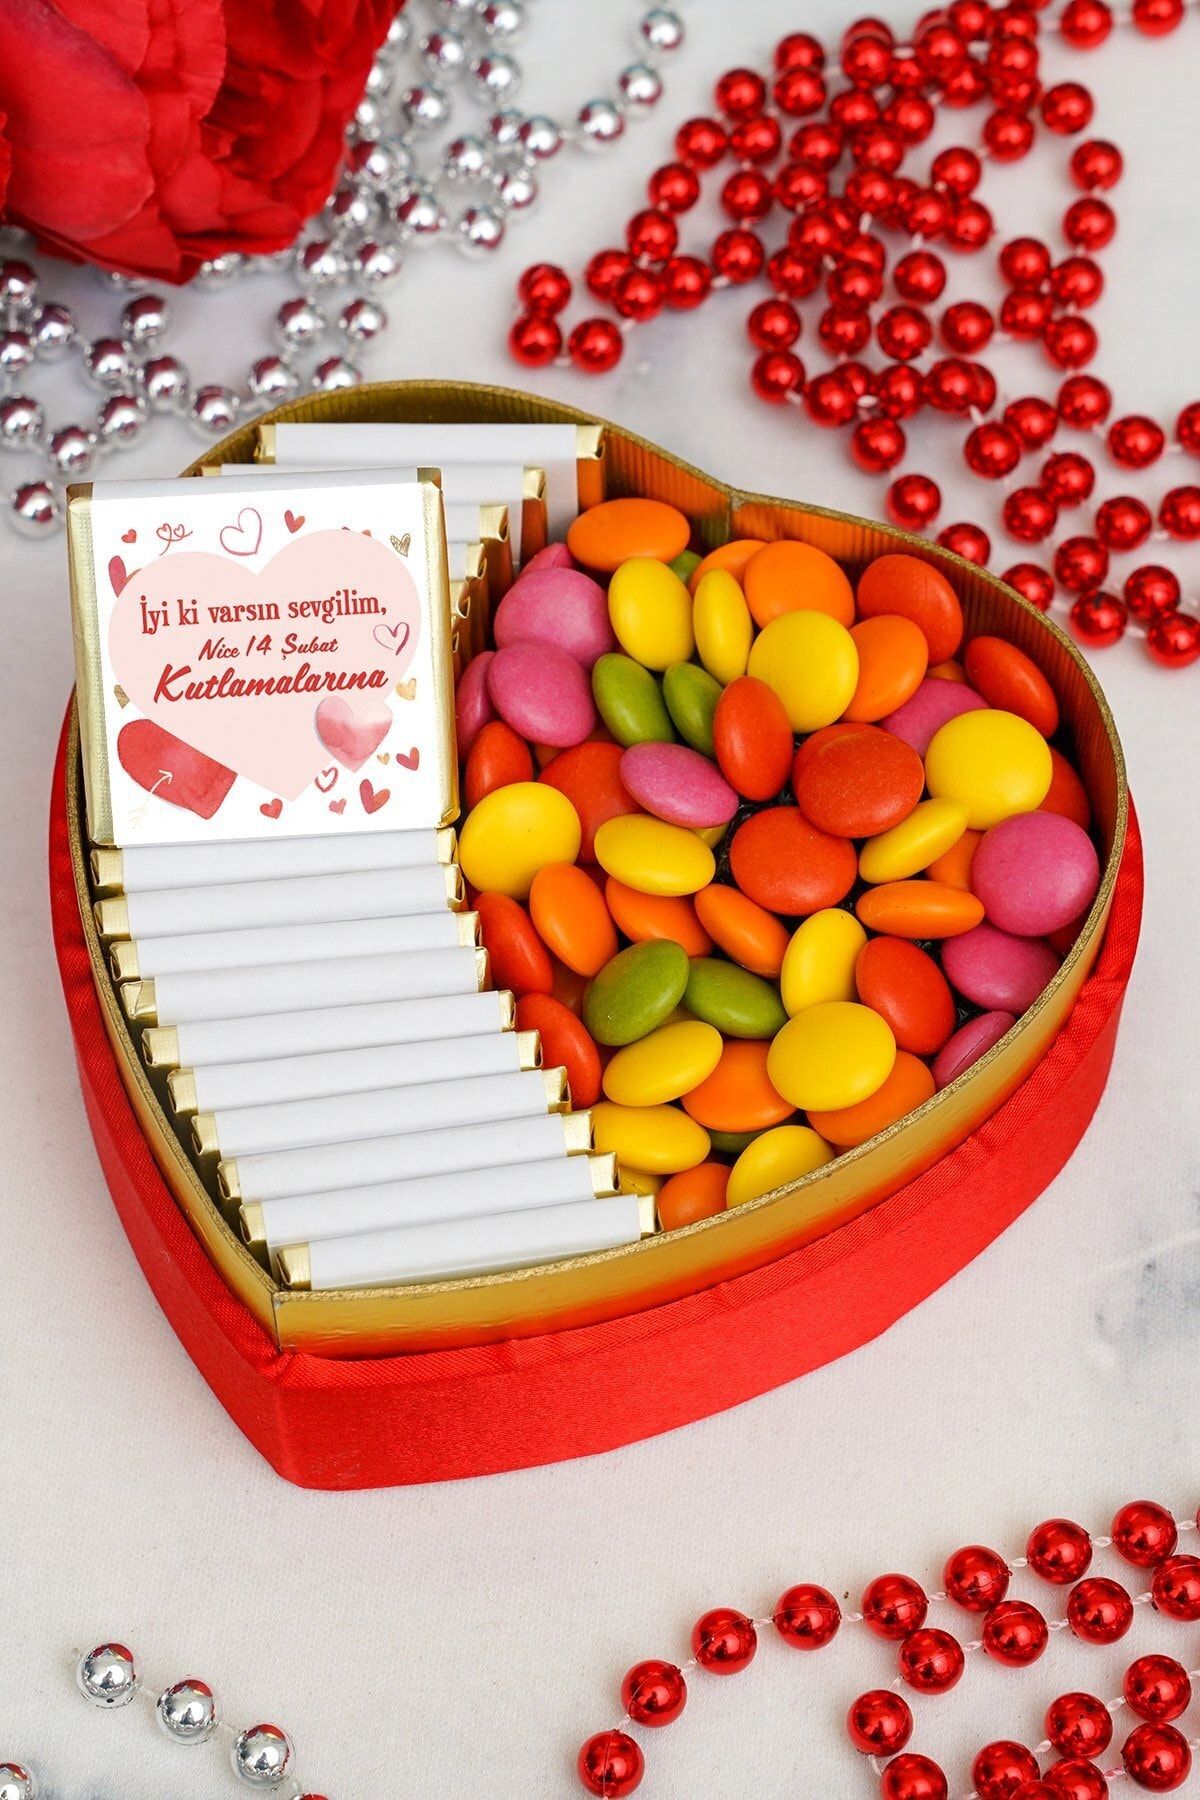 Çikolata Saati Iyi Ki Varsın Sevgilim, Nice 14 Şubat Kutlamalarına. - Madlen Çikolata & Bonibon- Küçük Boy